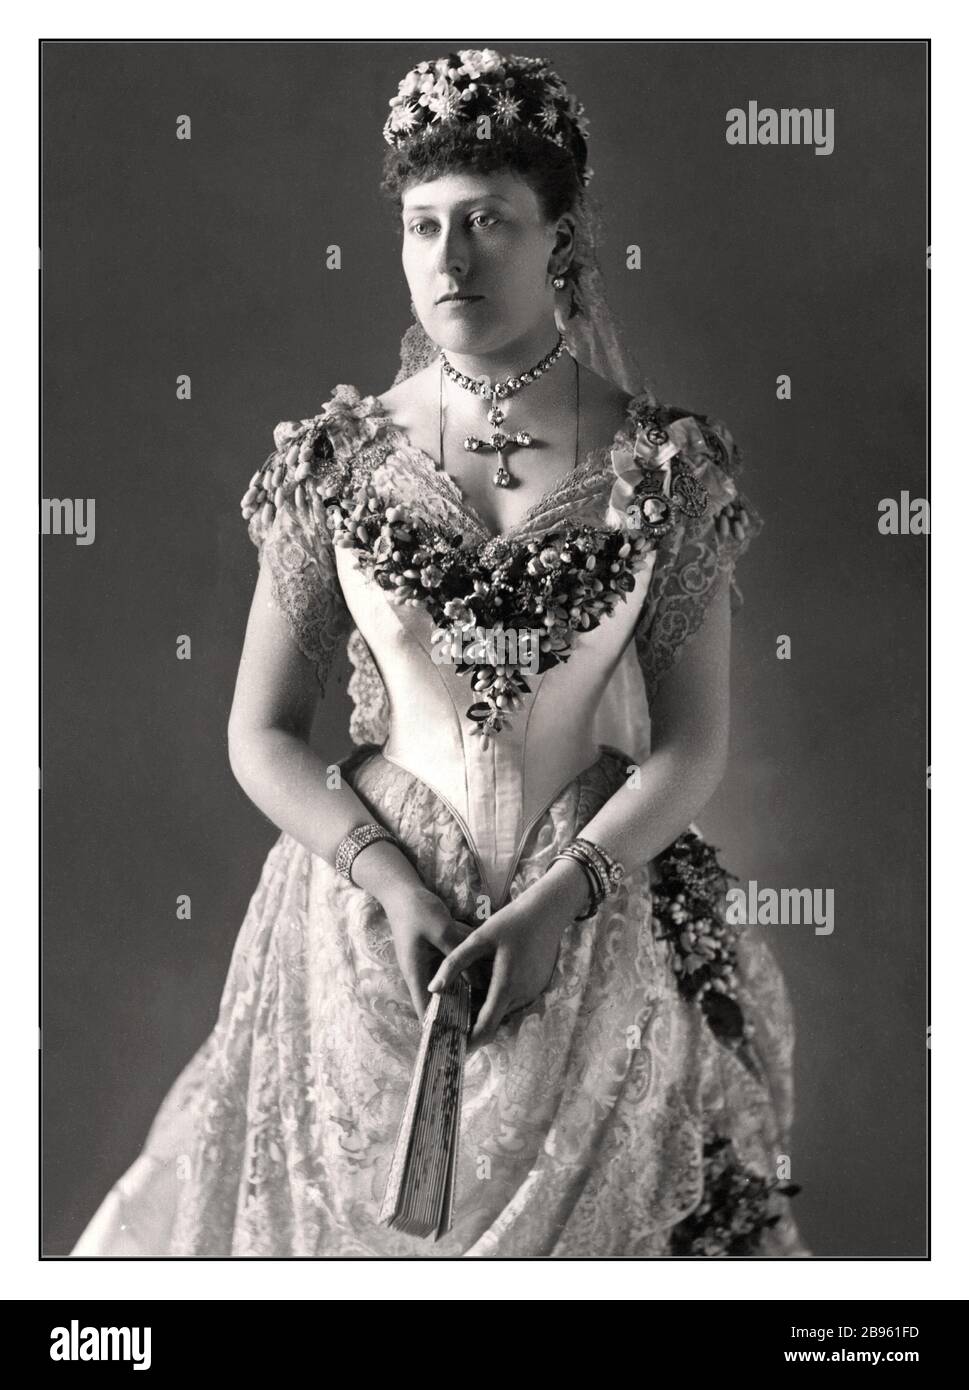 Beatrice del Regno Unito (Beatrice Mary Victoria Feodore; in seguito Principessa Enrico di Battenberg, 14 aprile 1857 – 26 ottobre 1944) è stata la quinta figlia e figlia minore della Regina Vittoria e del Principe Alberto. Beatrice fu l'ultimo dei figli della Regina Vittoria a morire, 66 anni dopo la prima, la sorella maggiore Alice. Foto Stock